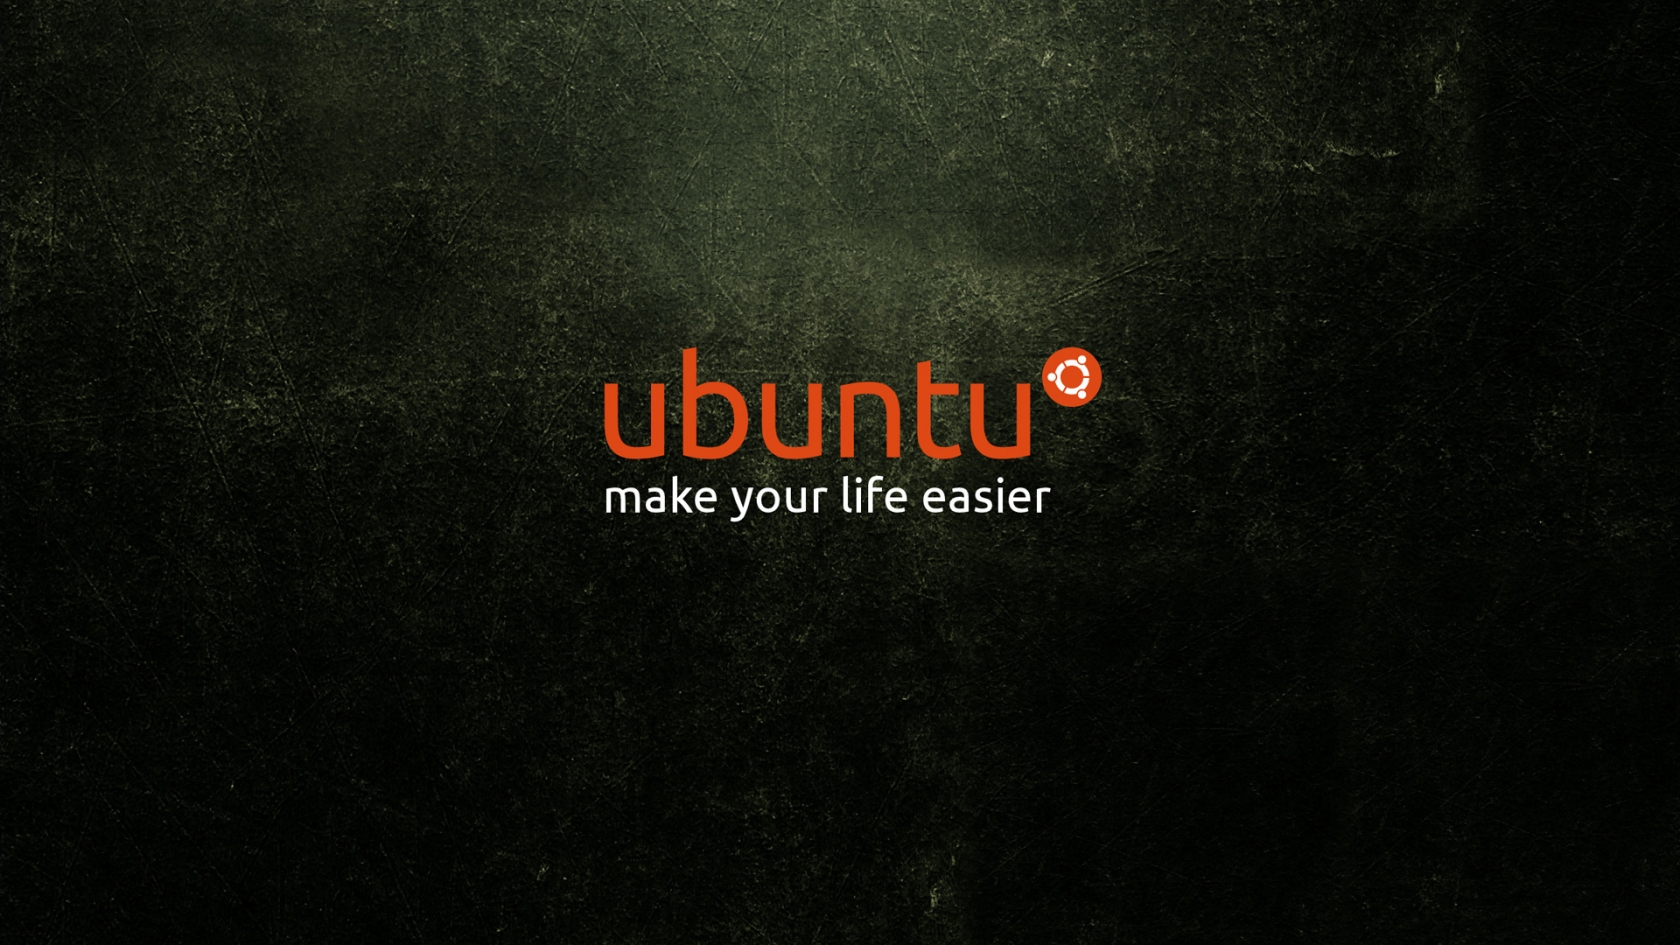 Ubuntu Life for 1680 x 945 HDTV resolution